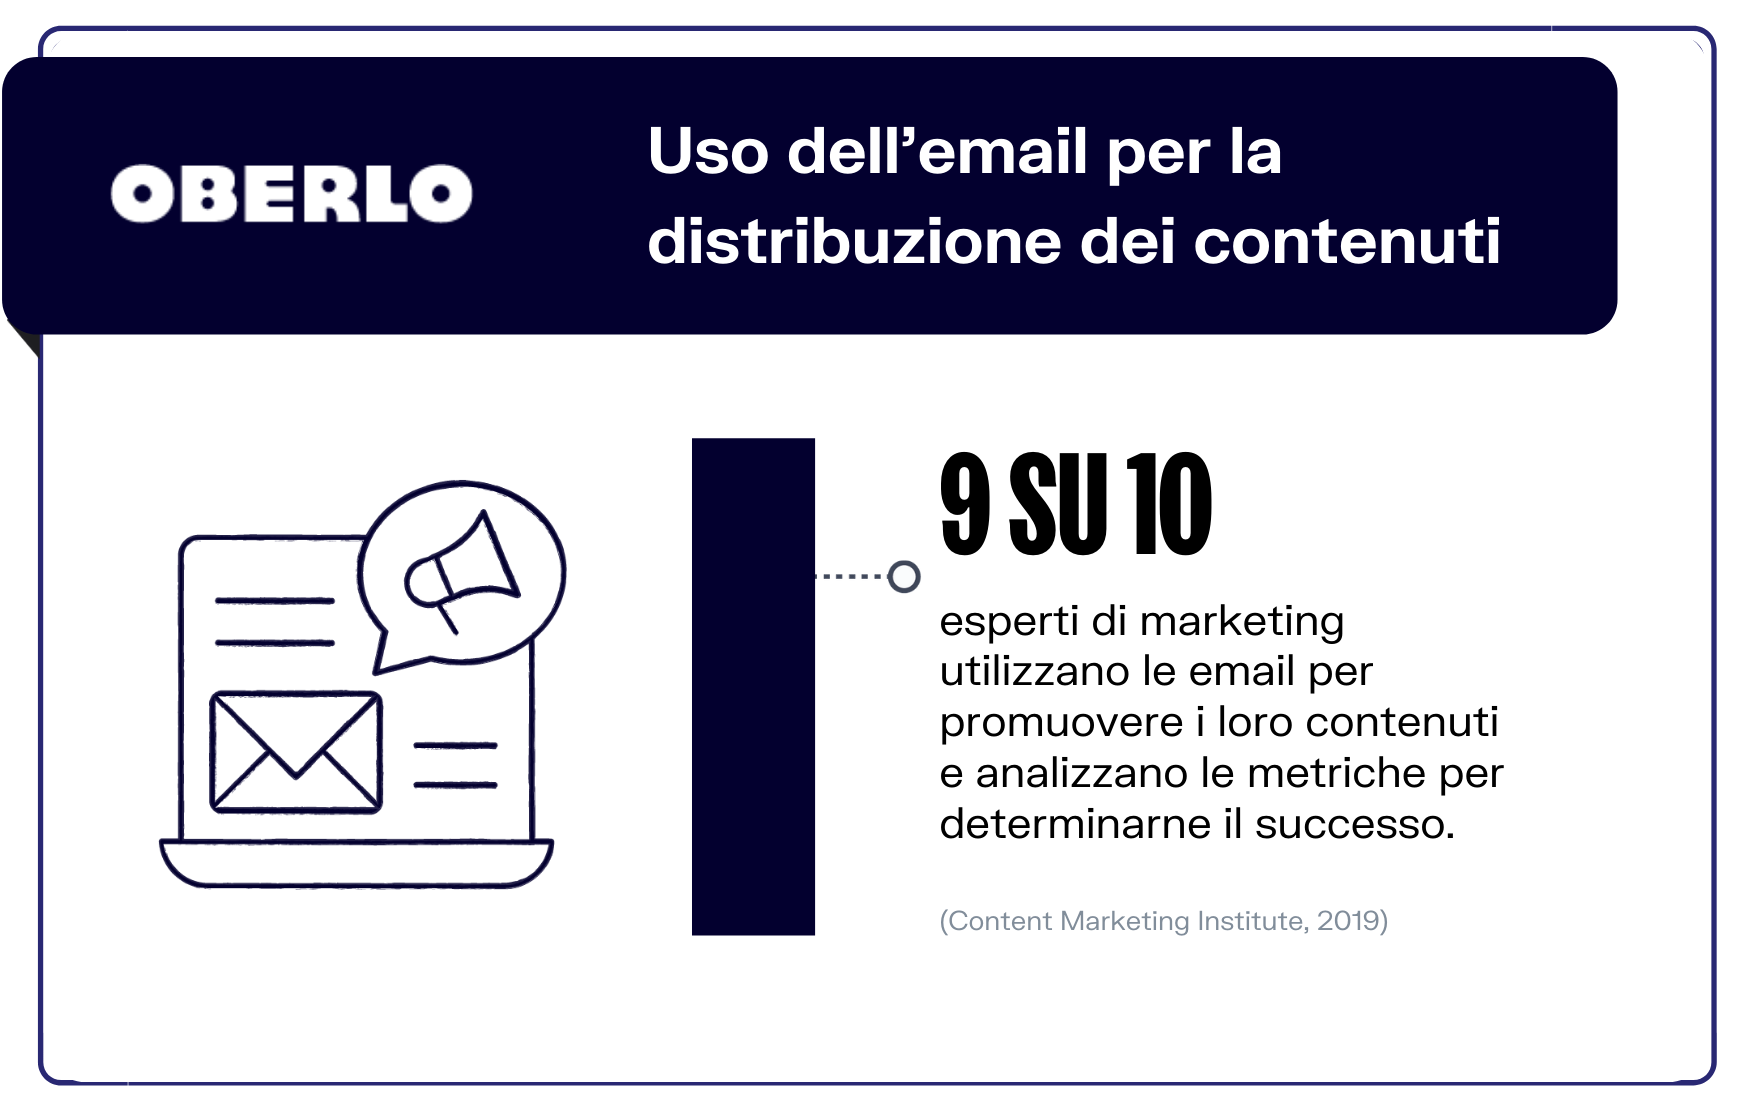 statistiche email marketing contenuti